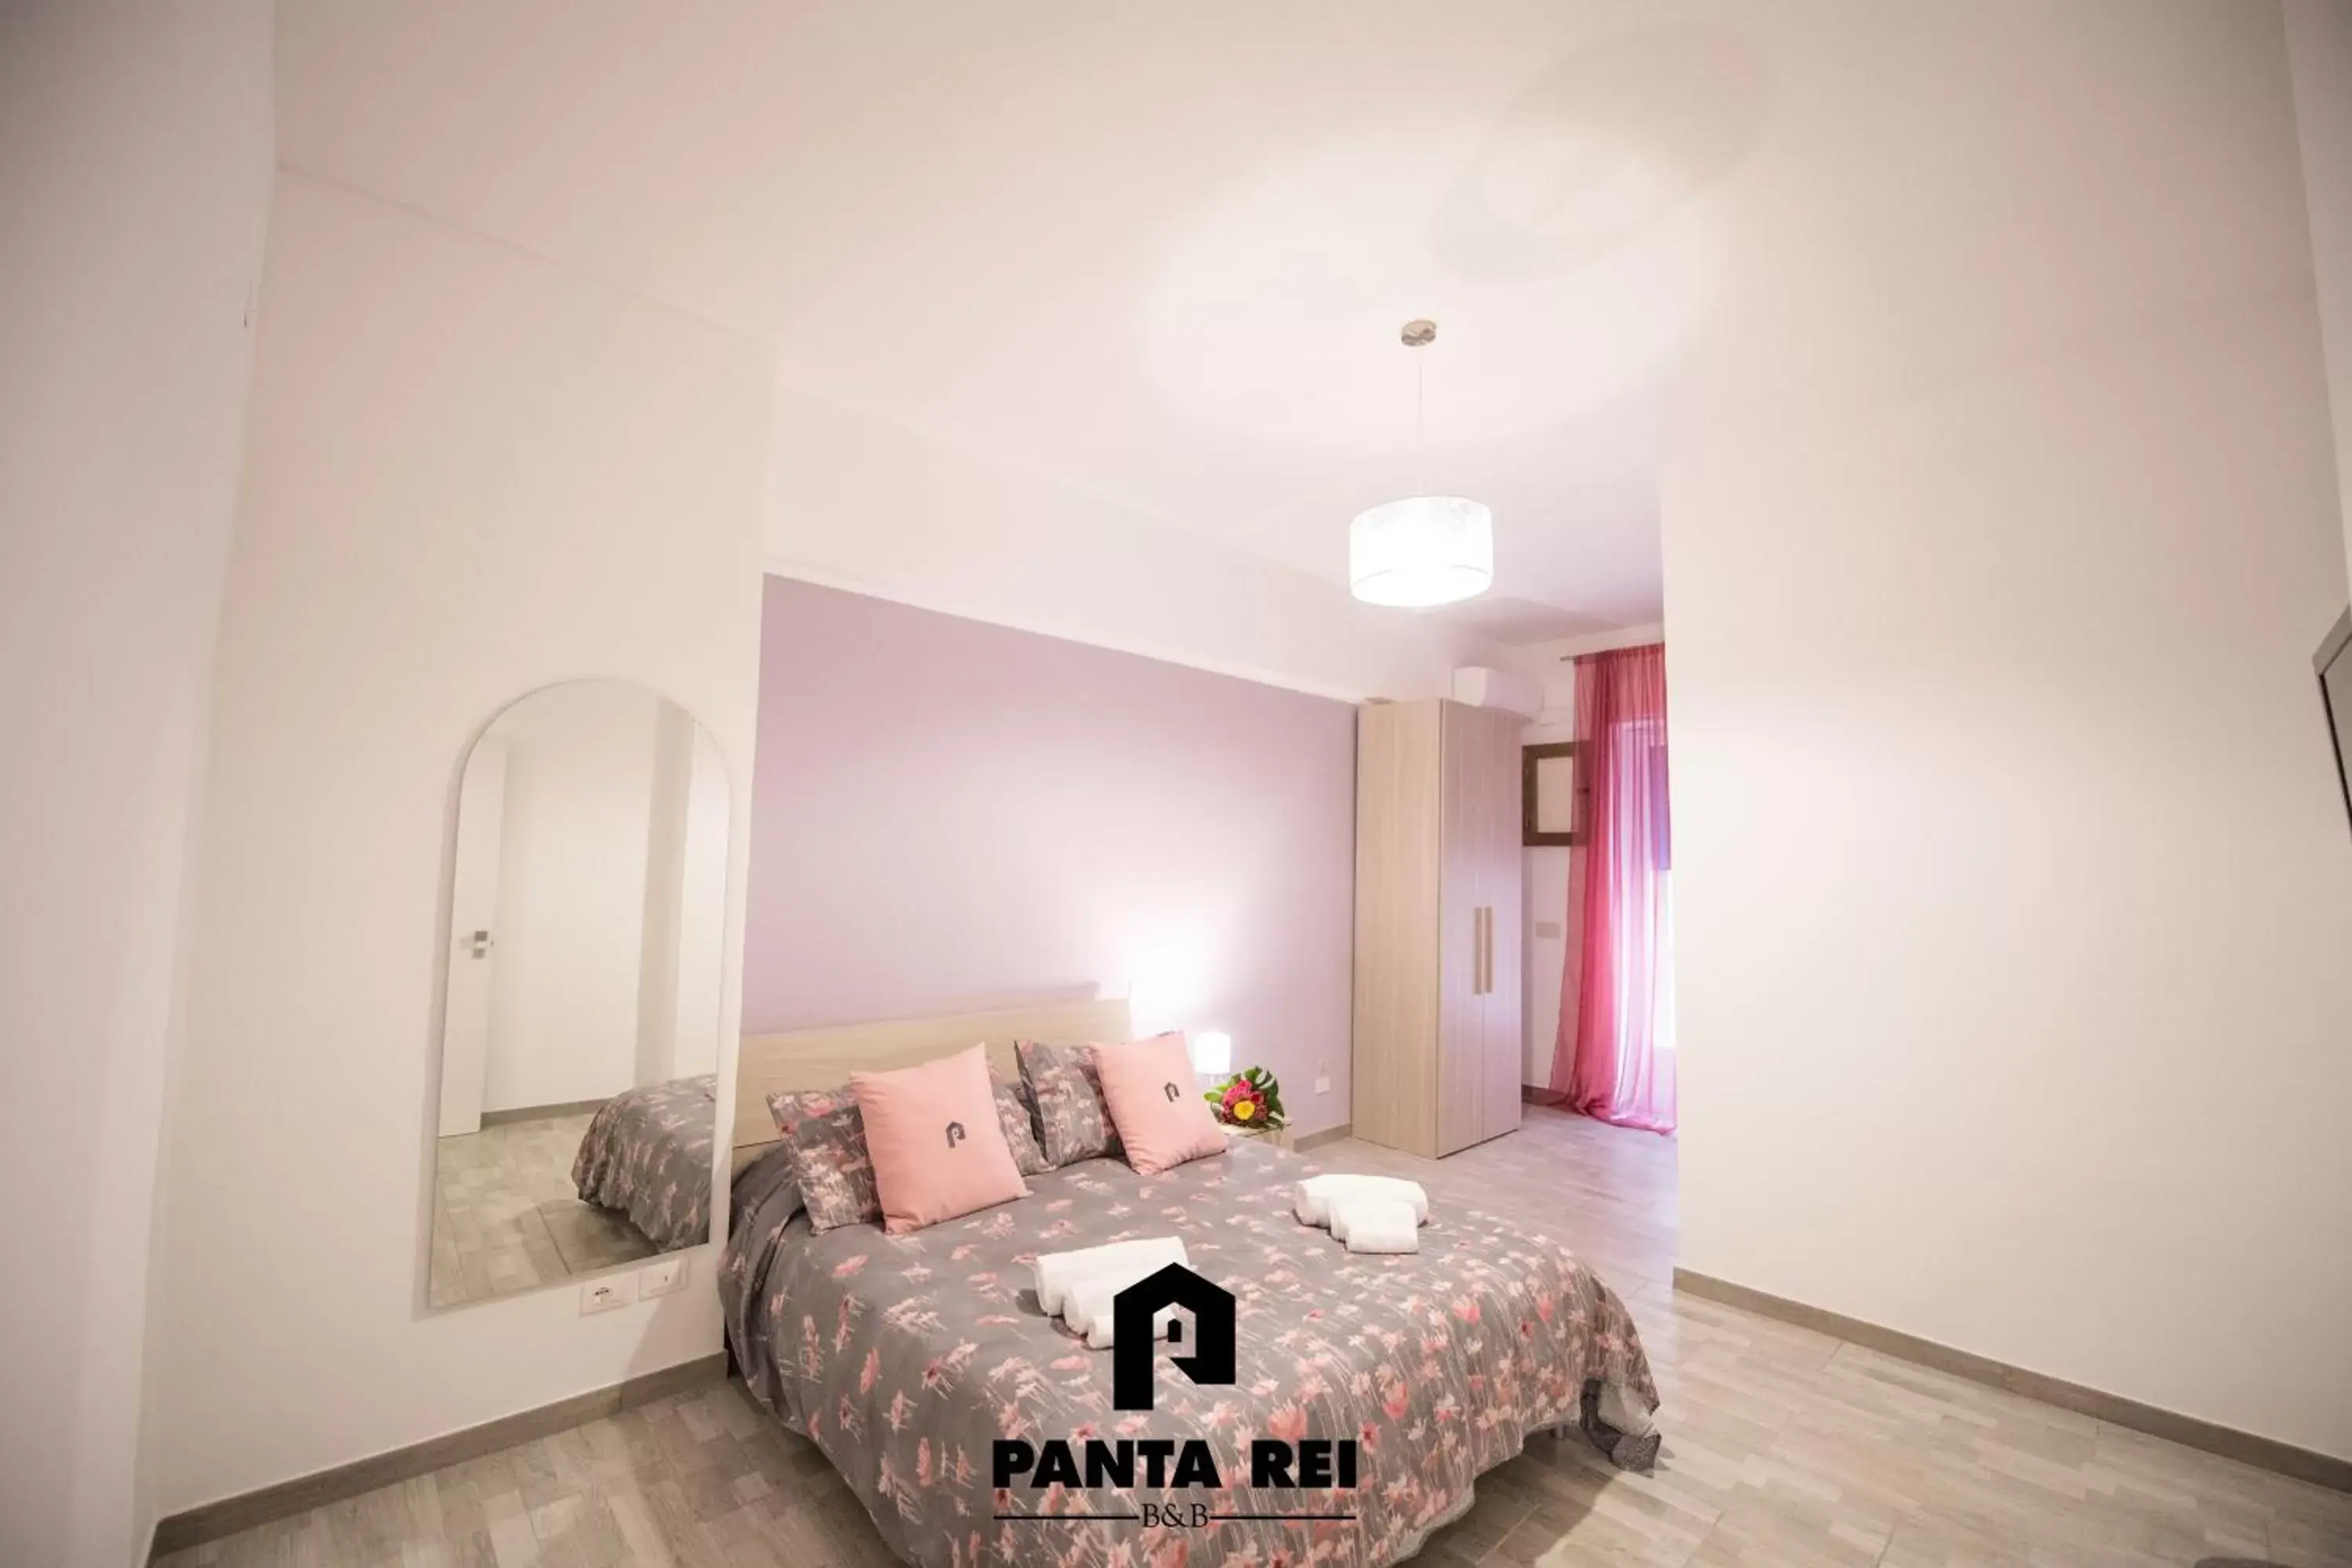 Comfort Quadruple Room in Pantarei B&B